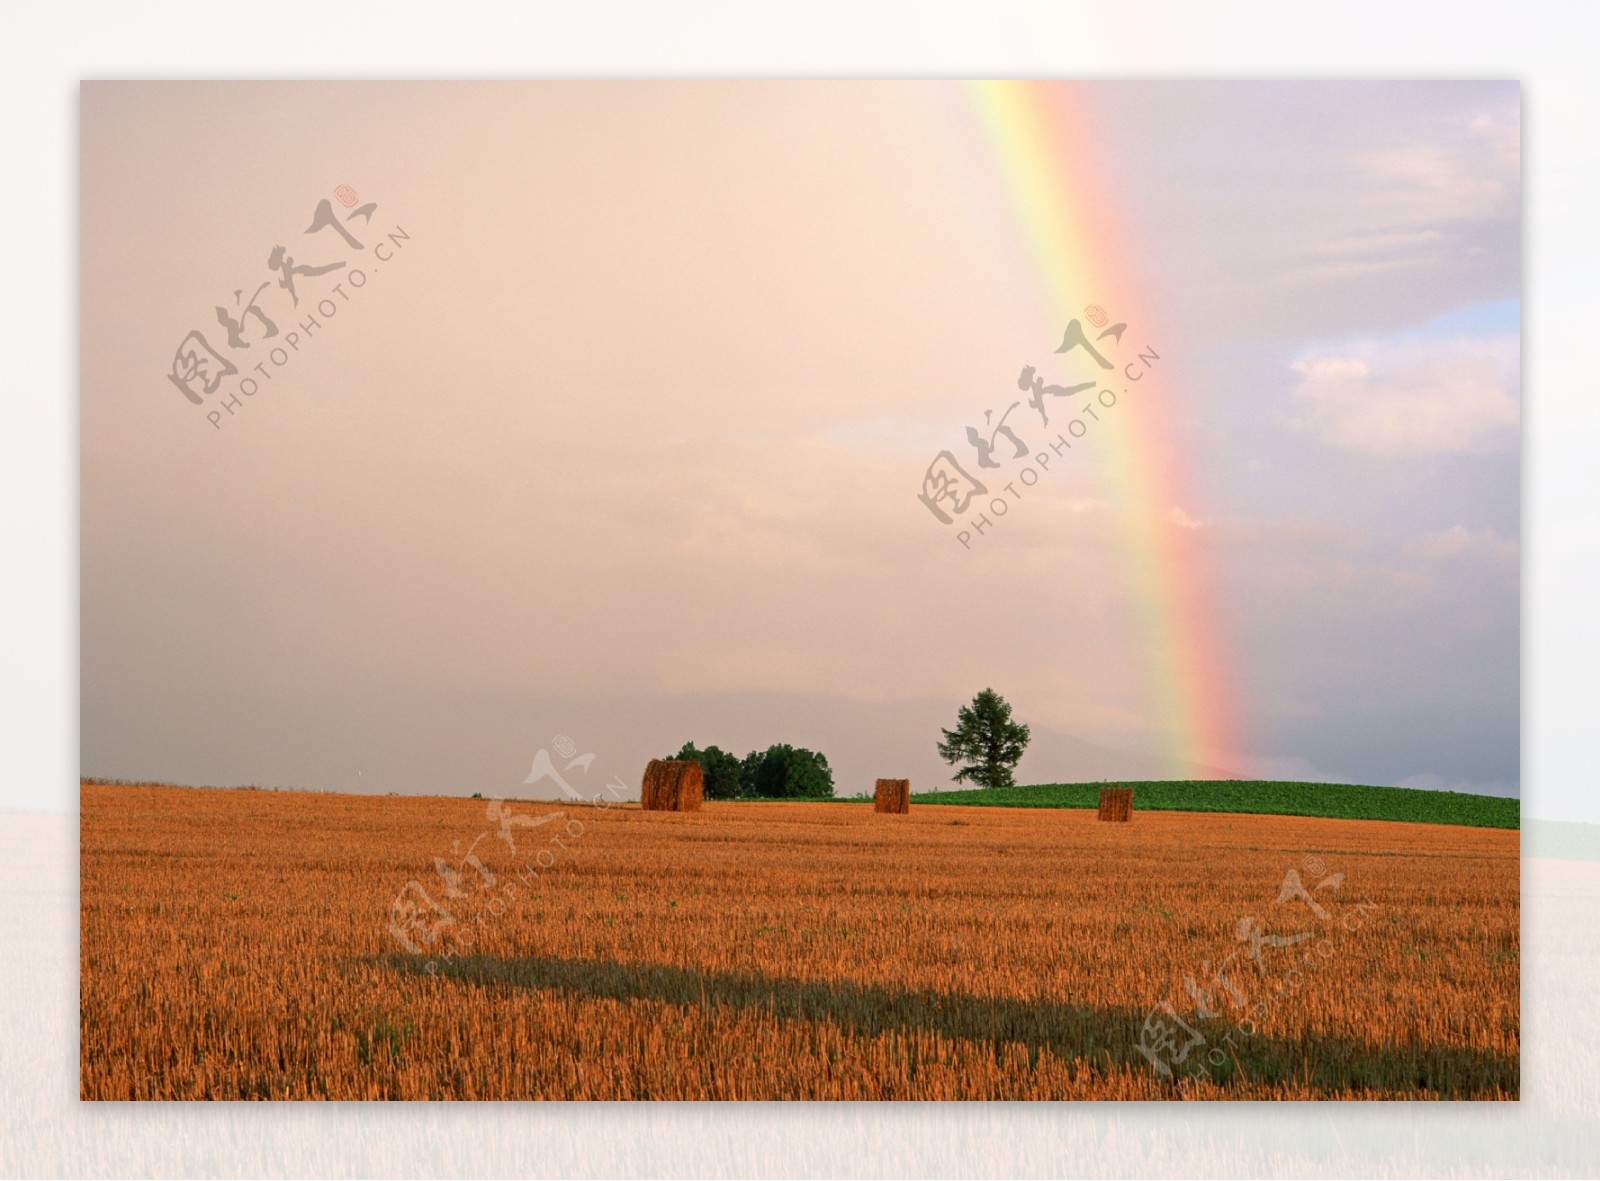 田野上的彩虹